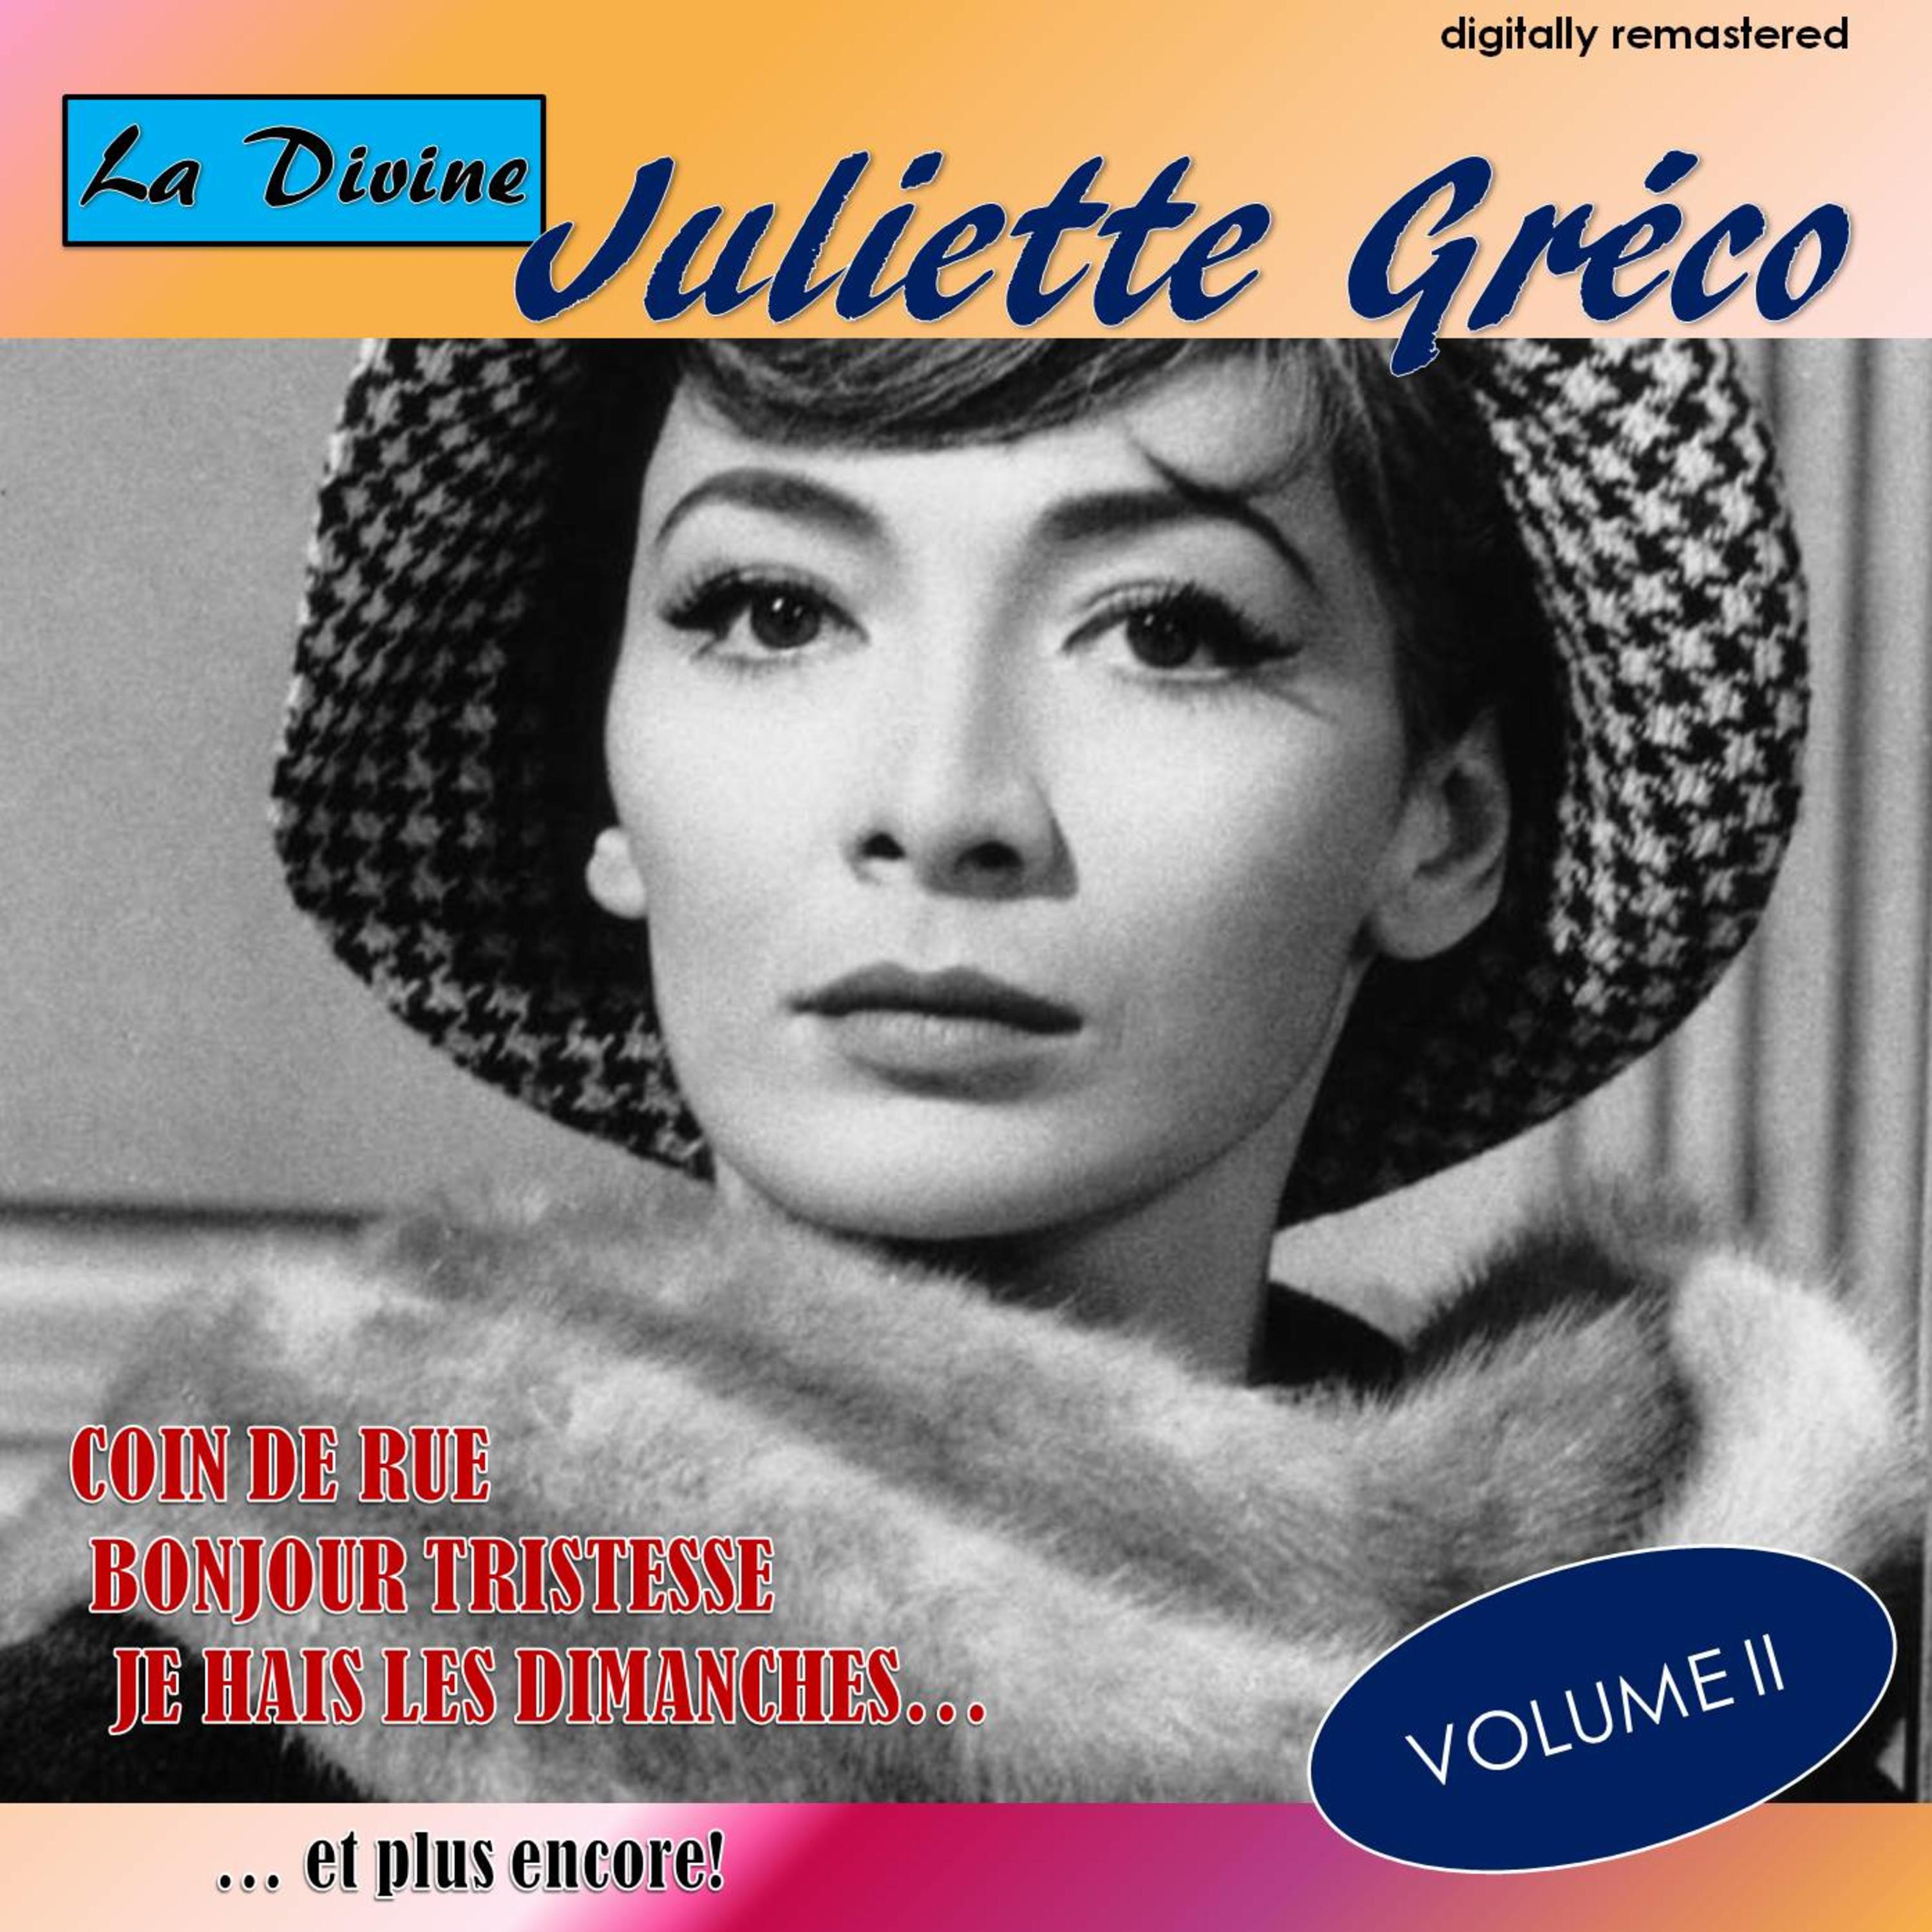 La Divine Juliette Gre co, Vol. 2 Digitally Remastered